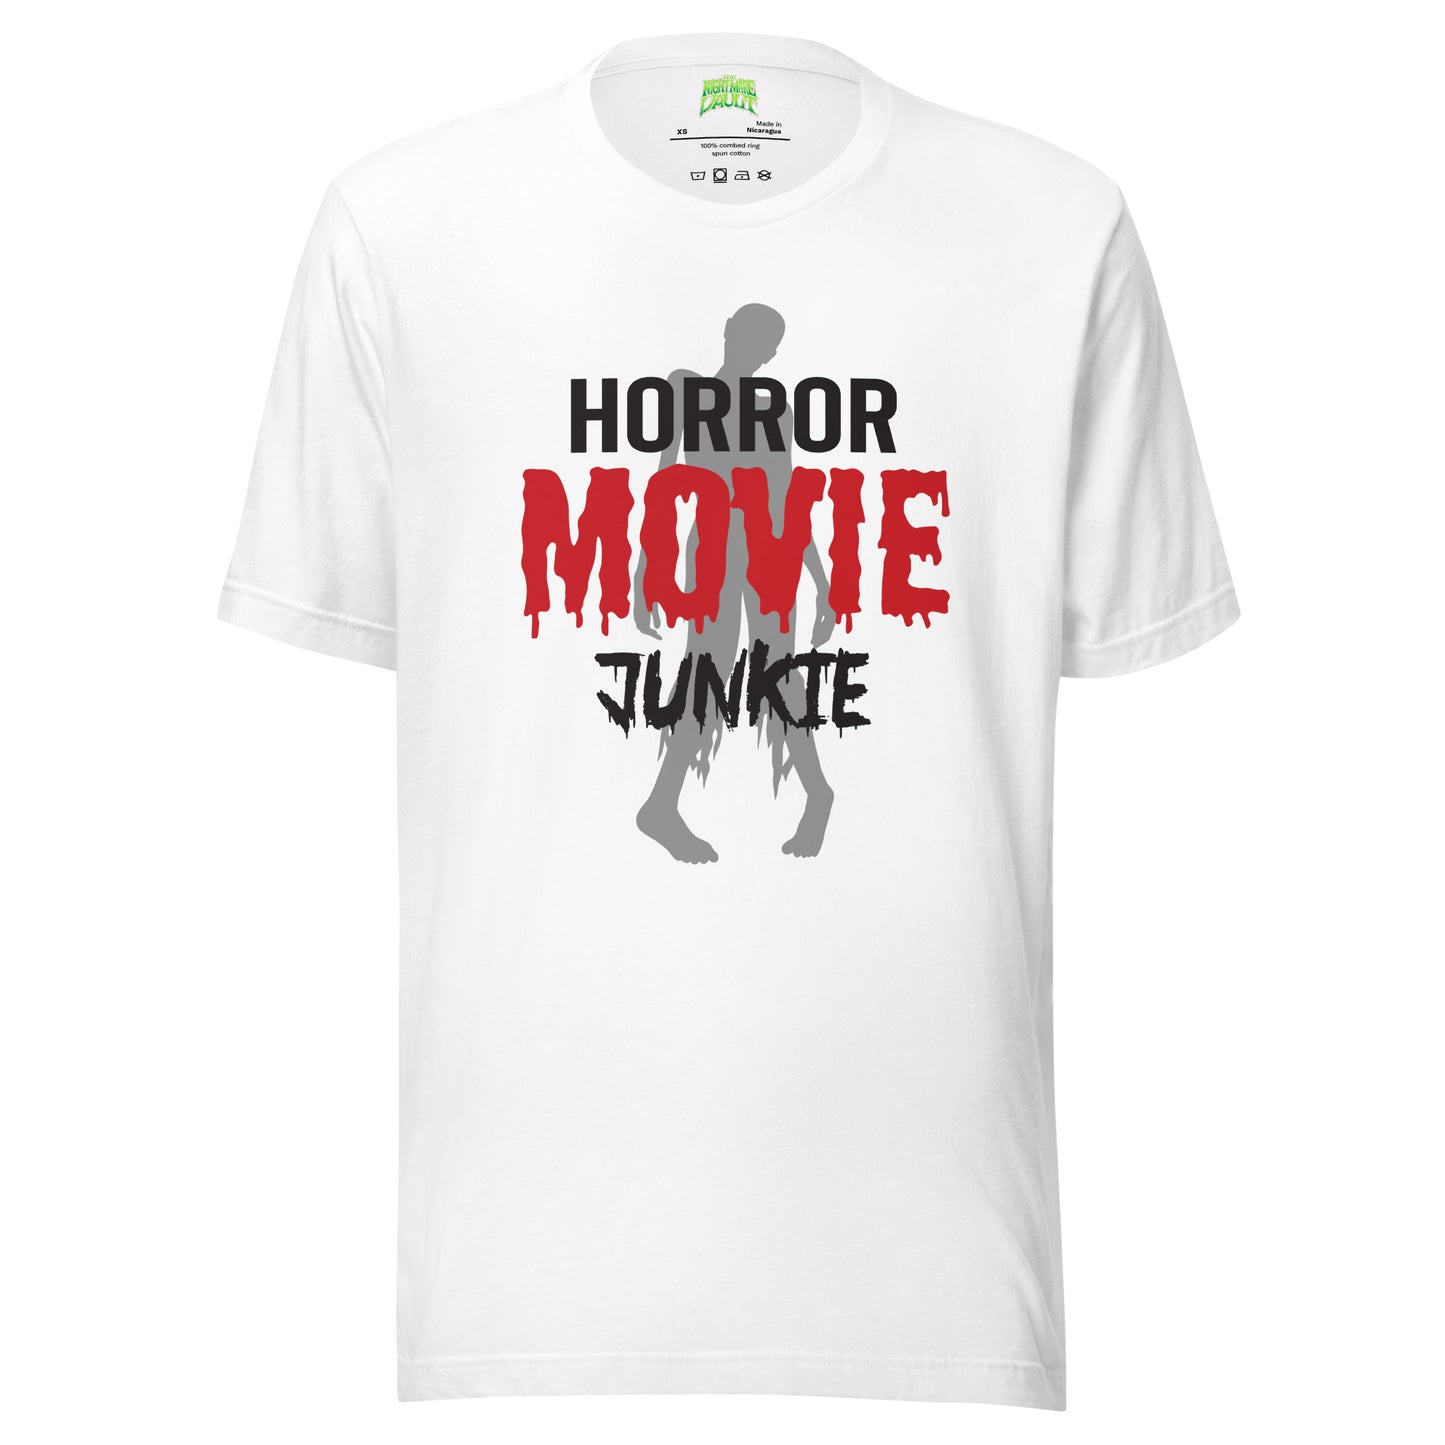 Horror Movie Junkie tee